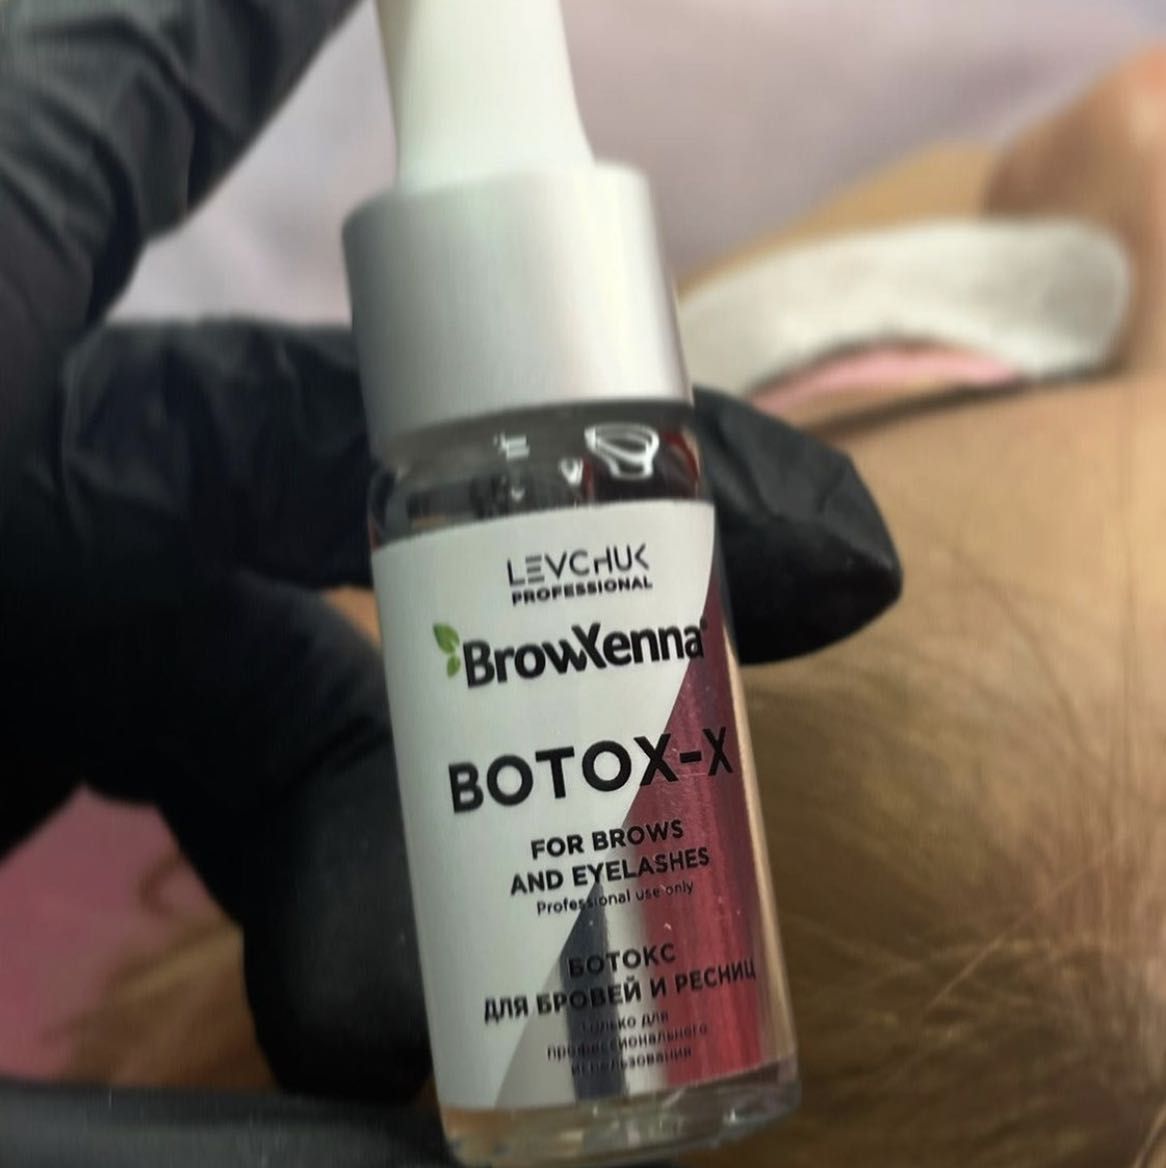 Portfolio usługi Botox dla brwi